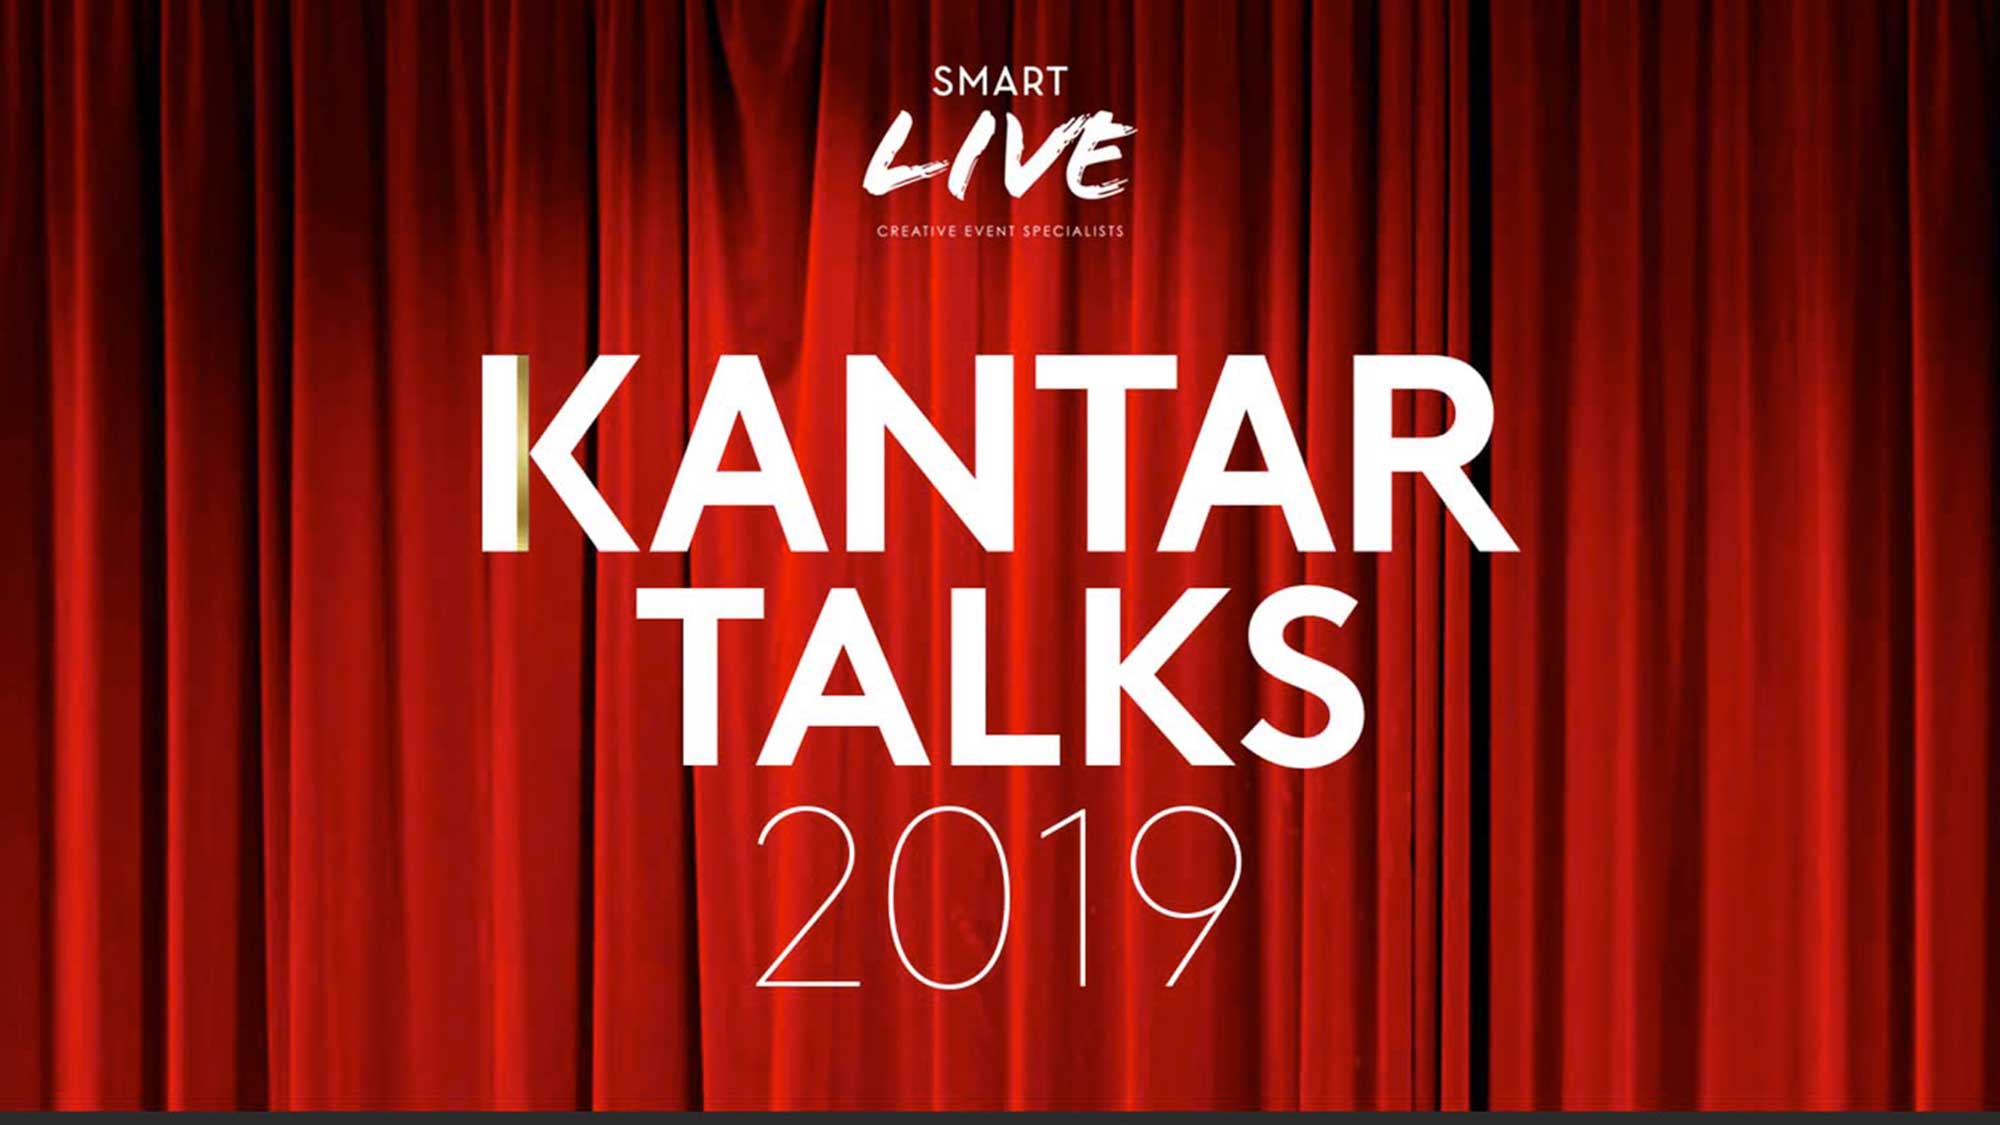 Kantar Talks event concepts